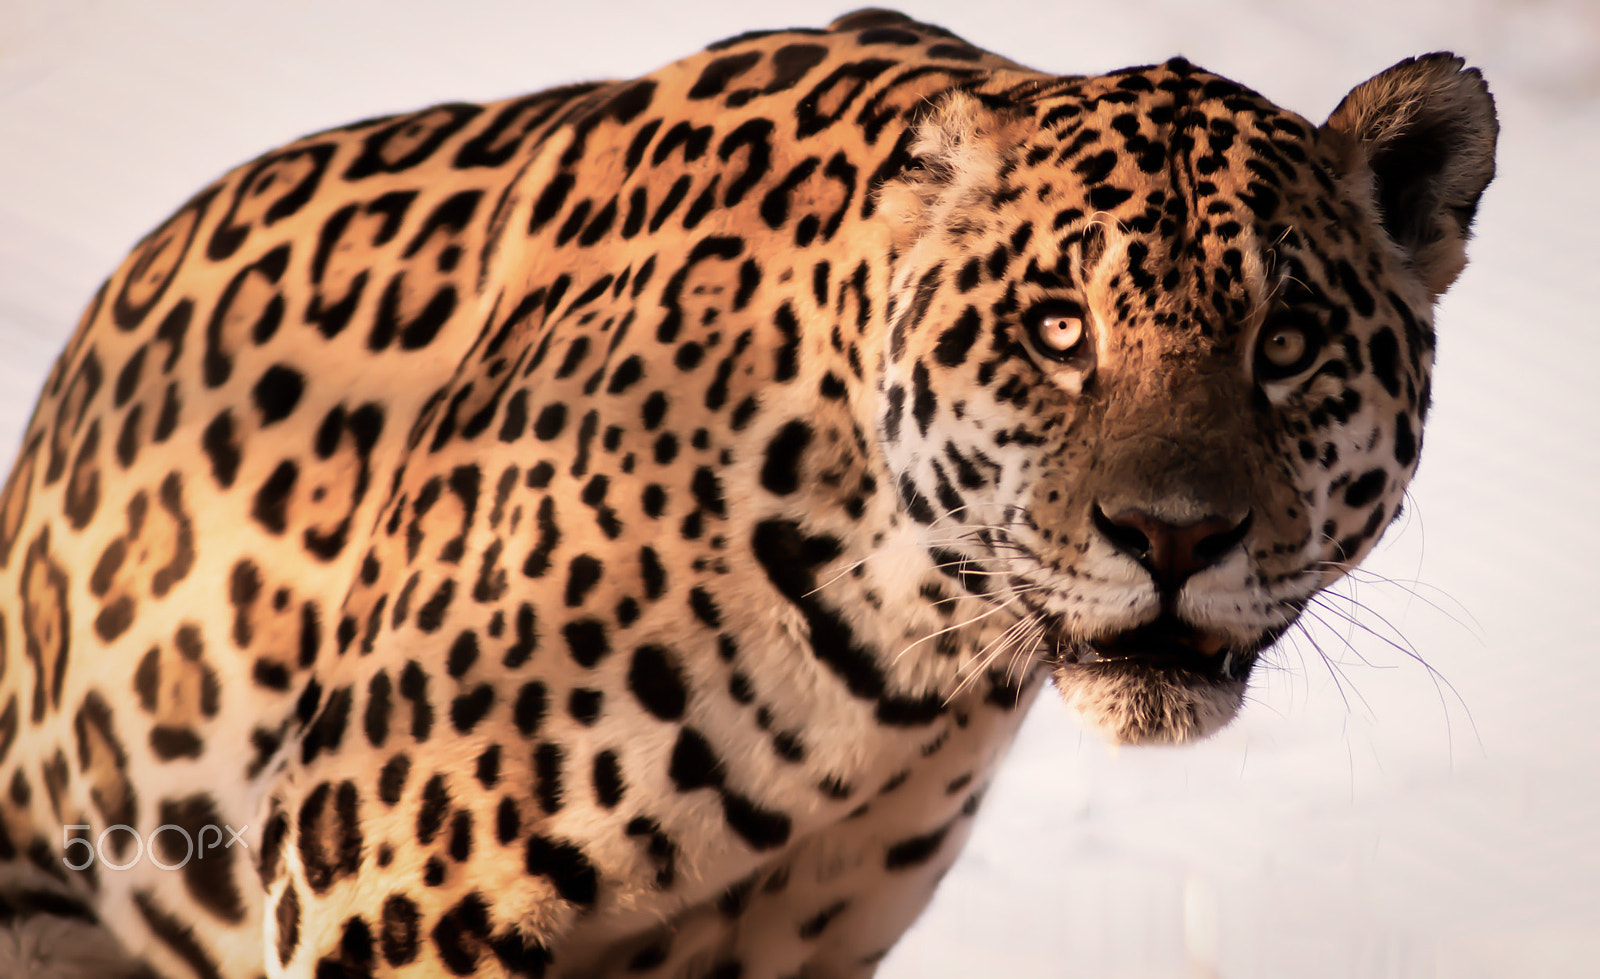 AF Nikkor 180mm f/2.8 IF-ED sample photo. Curious jaguar photography